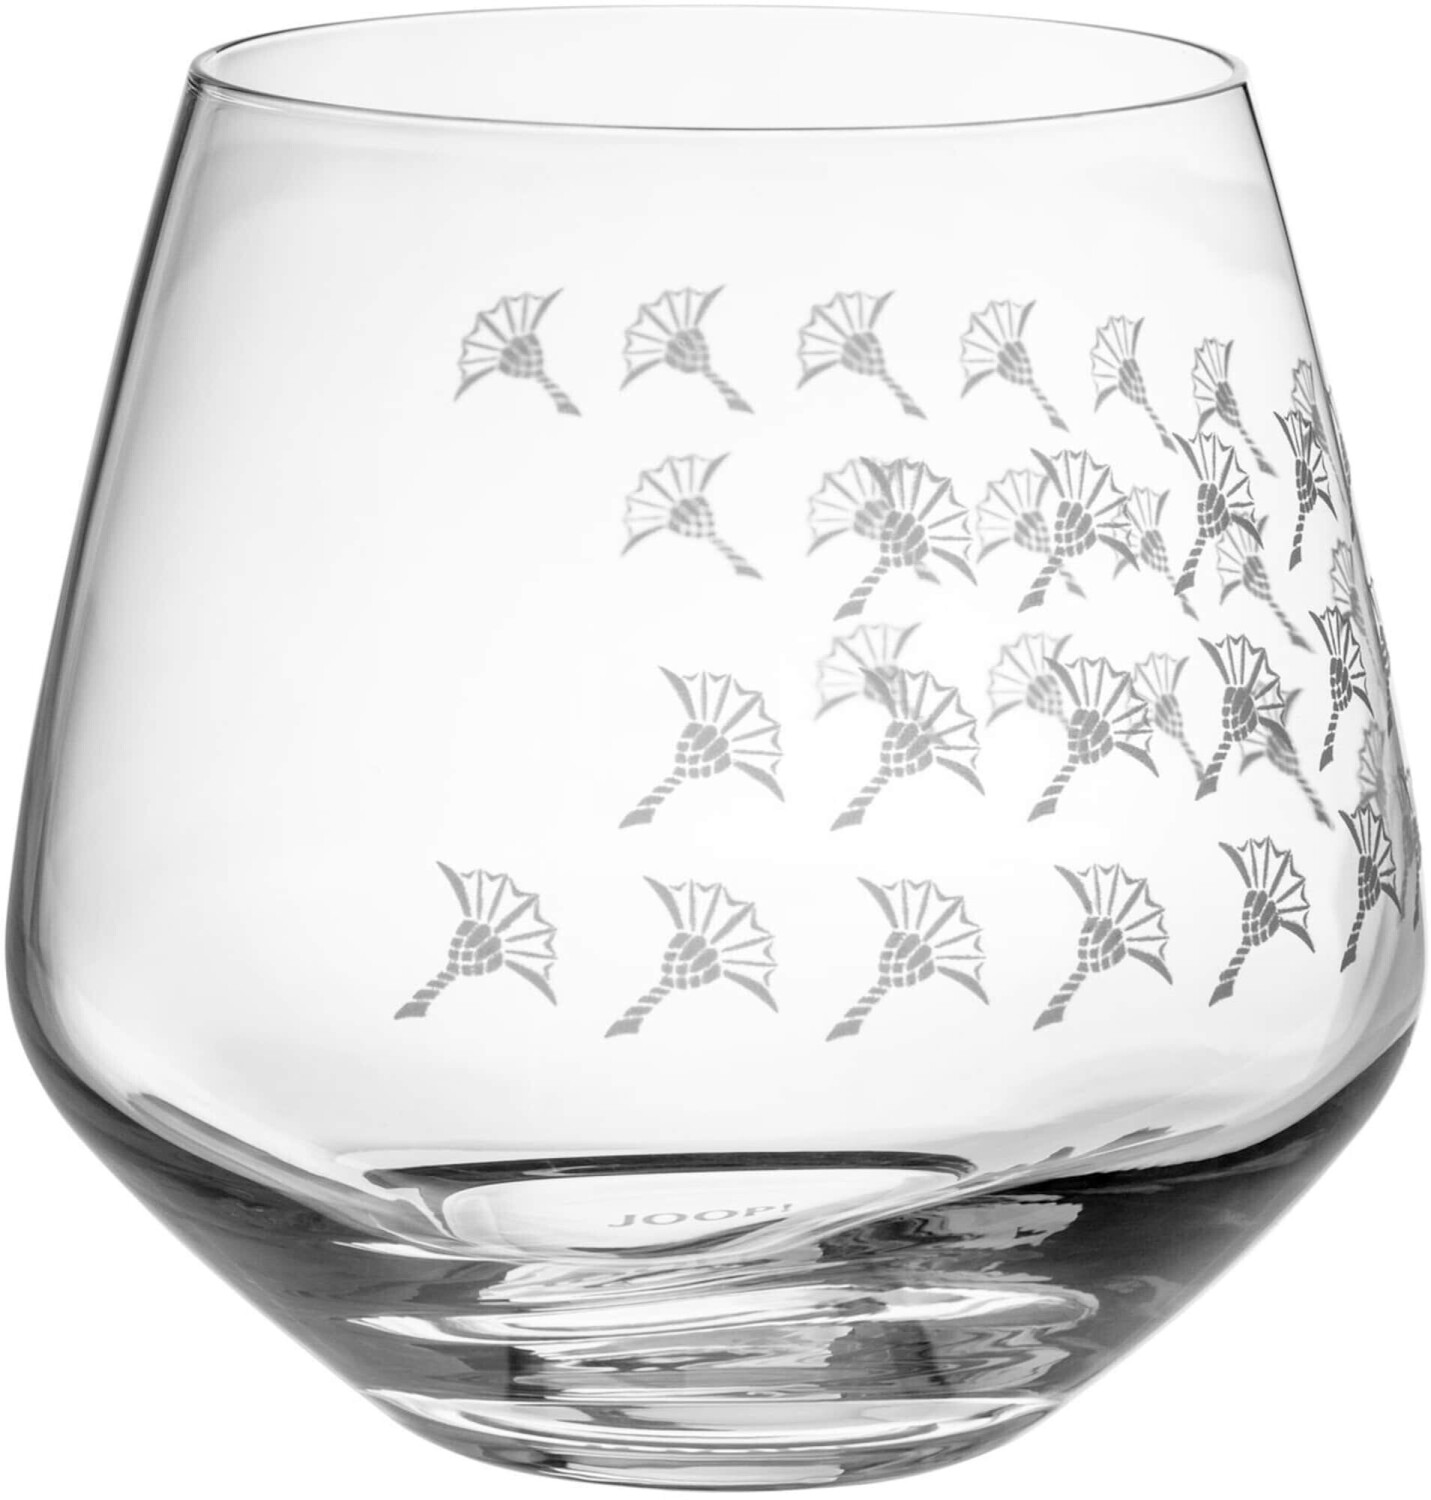 Joop! Faded Cornflower Wasserglas 390 ml 2-teilig ab 24,90 € |  Preisvergleich bei